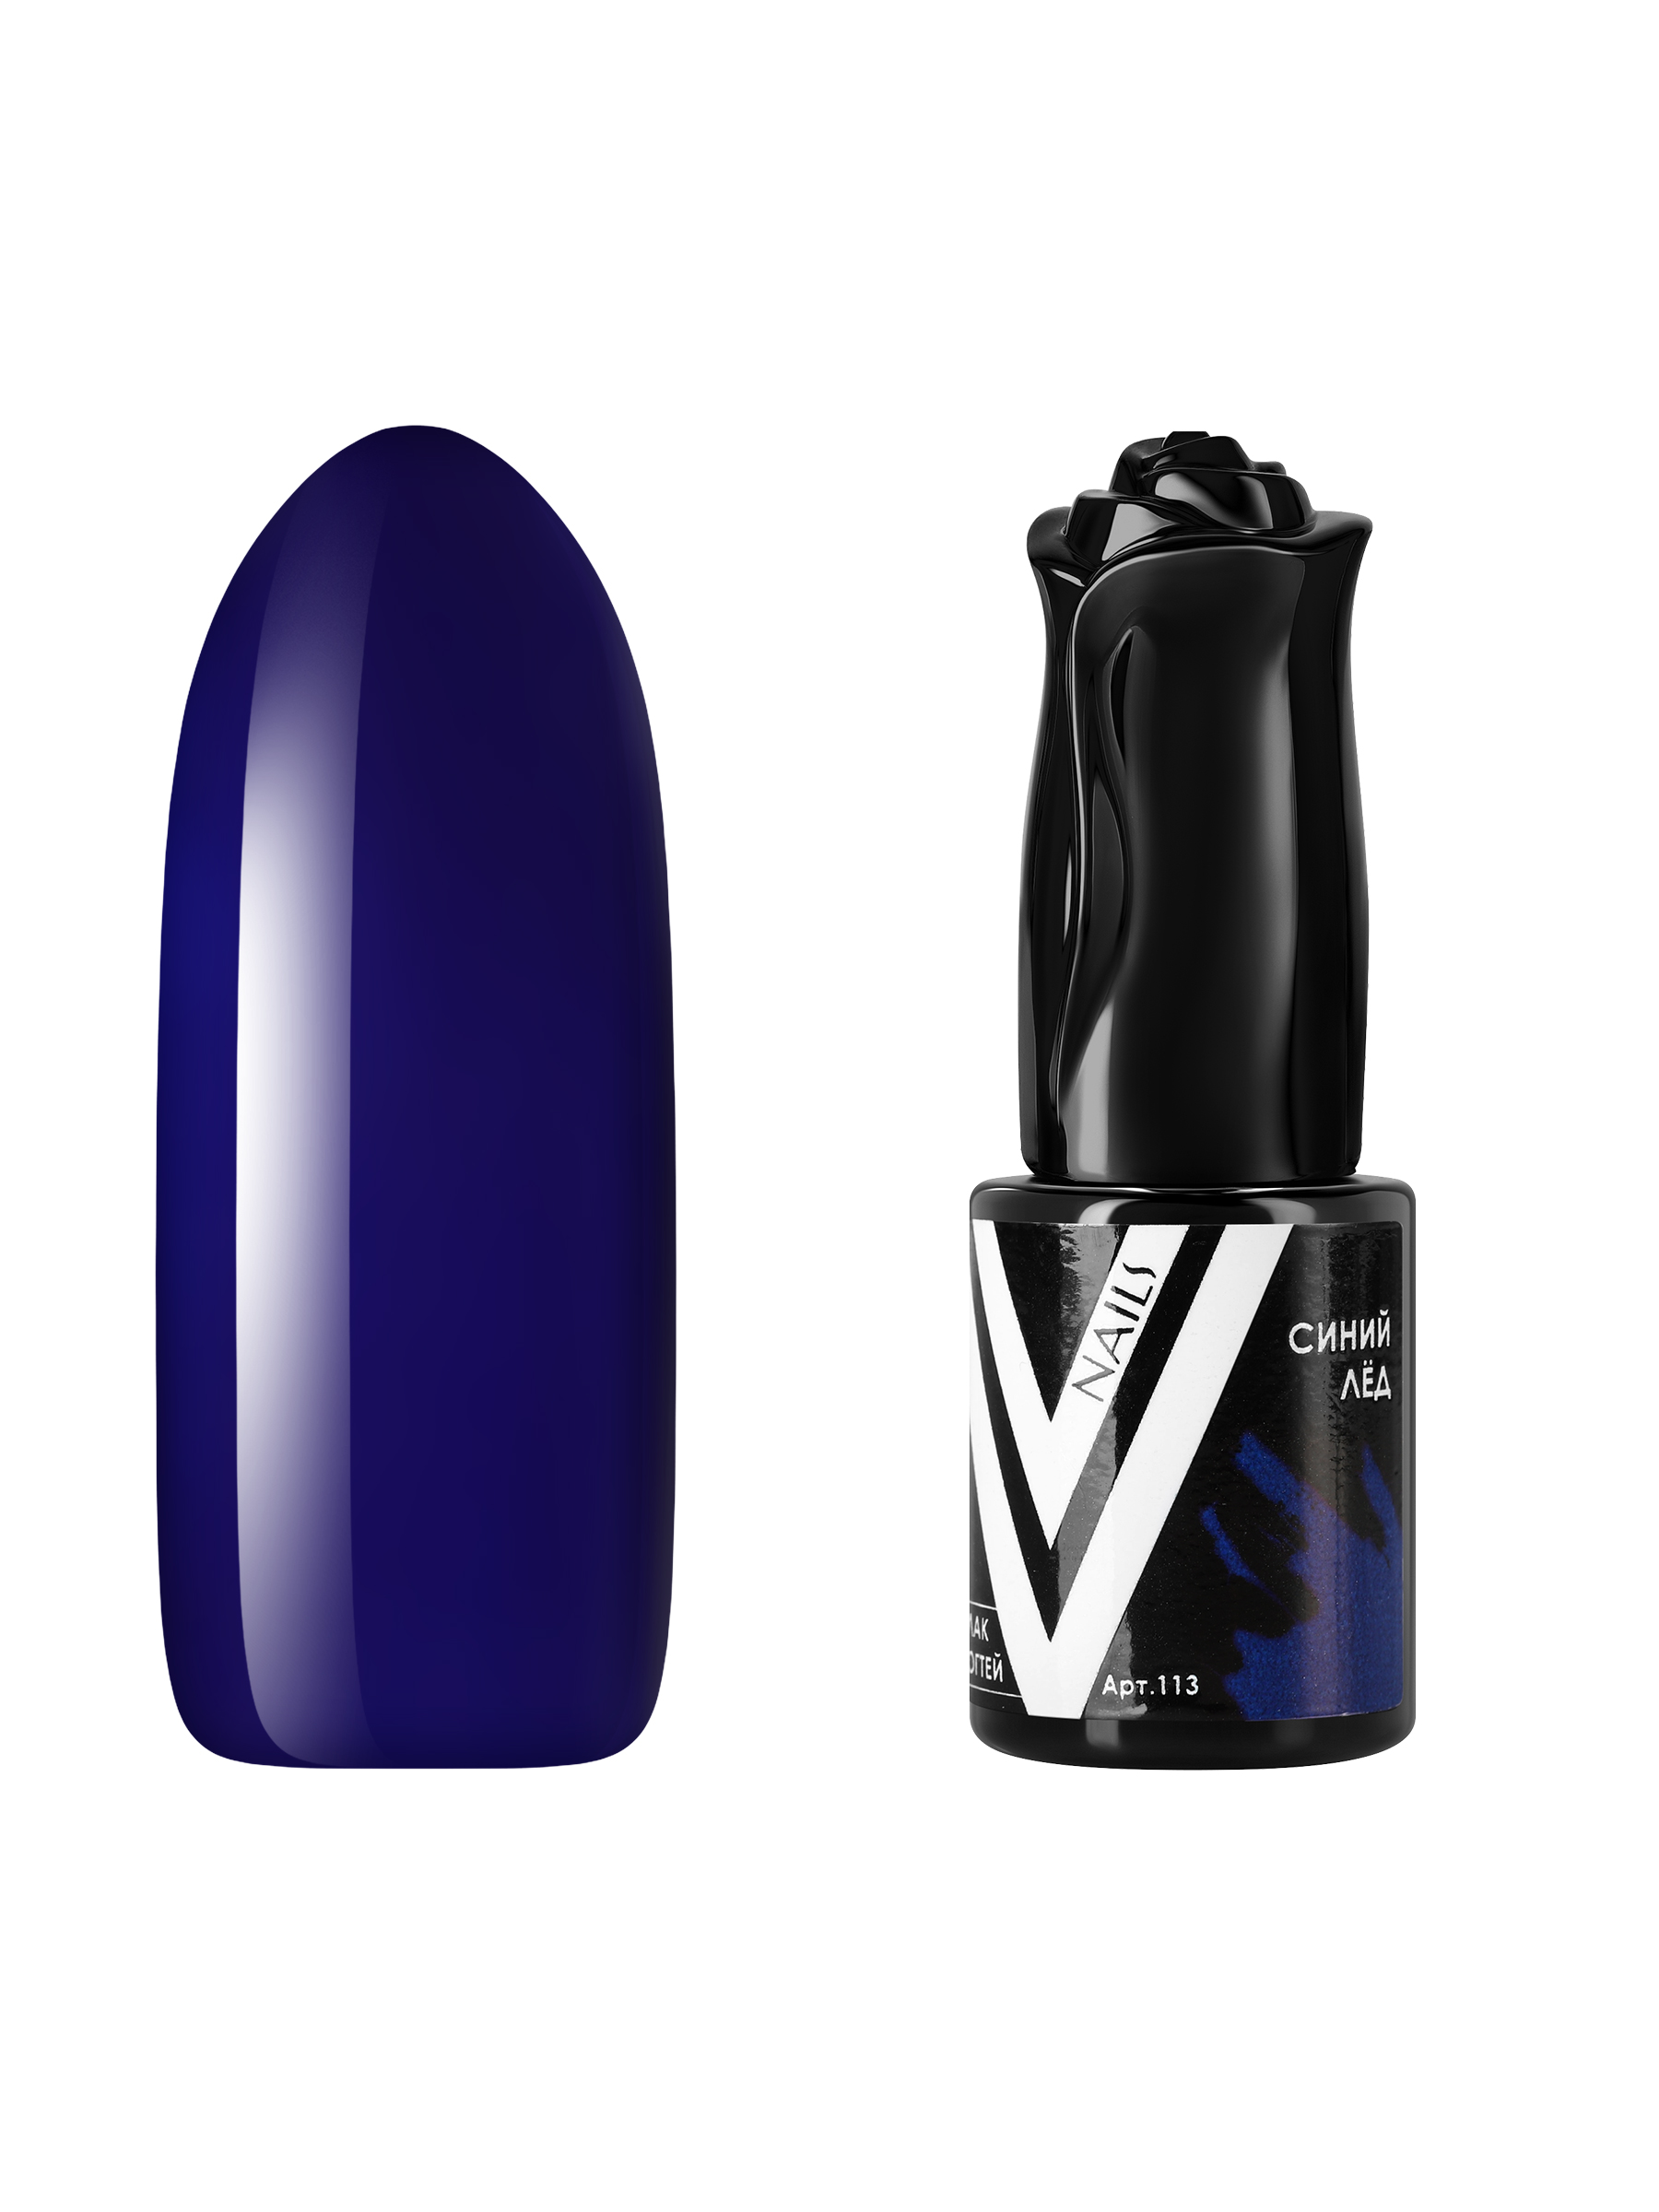 Гель-лак для ногтей Vogue Nails плотный самовыравнивающийся, темный, синий, 10 мл ремень женский ширина 1 5 см пряжка метал люверсы синий